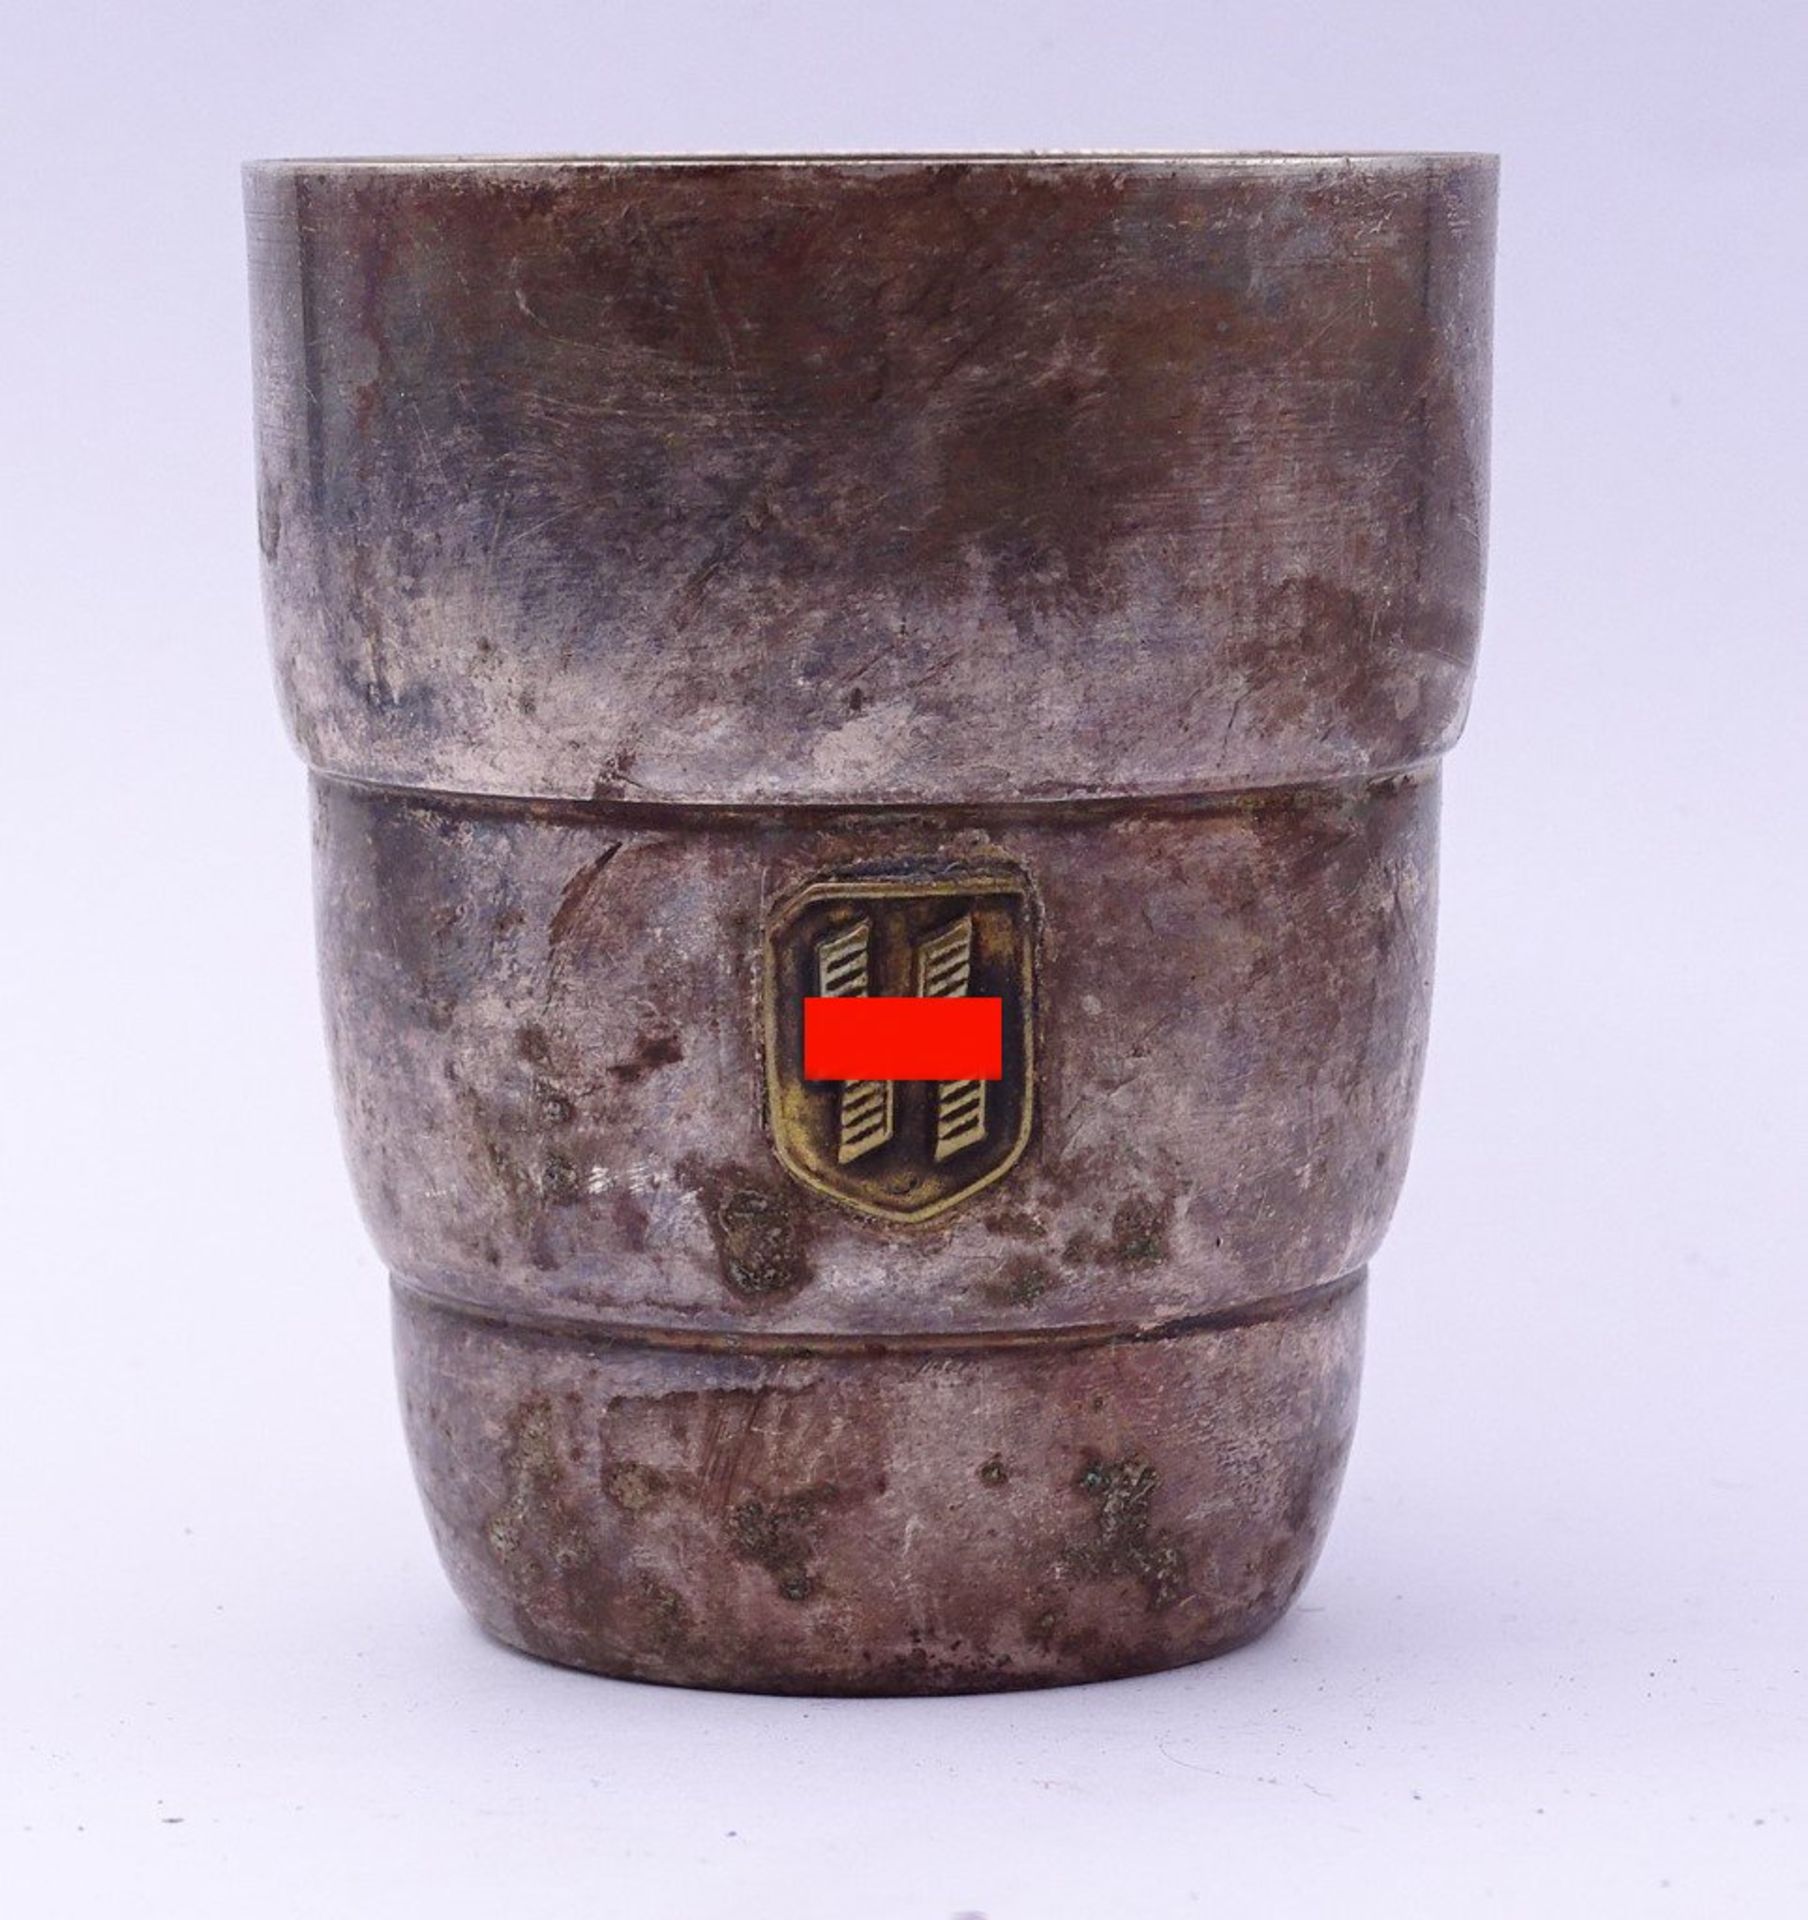 SS-Trinkbecher mit aufgelegter Rune,im Boden gepunzt,RZM,H-8,0cm,Alters-u. Gebrauchsspuren